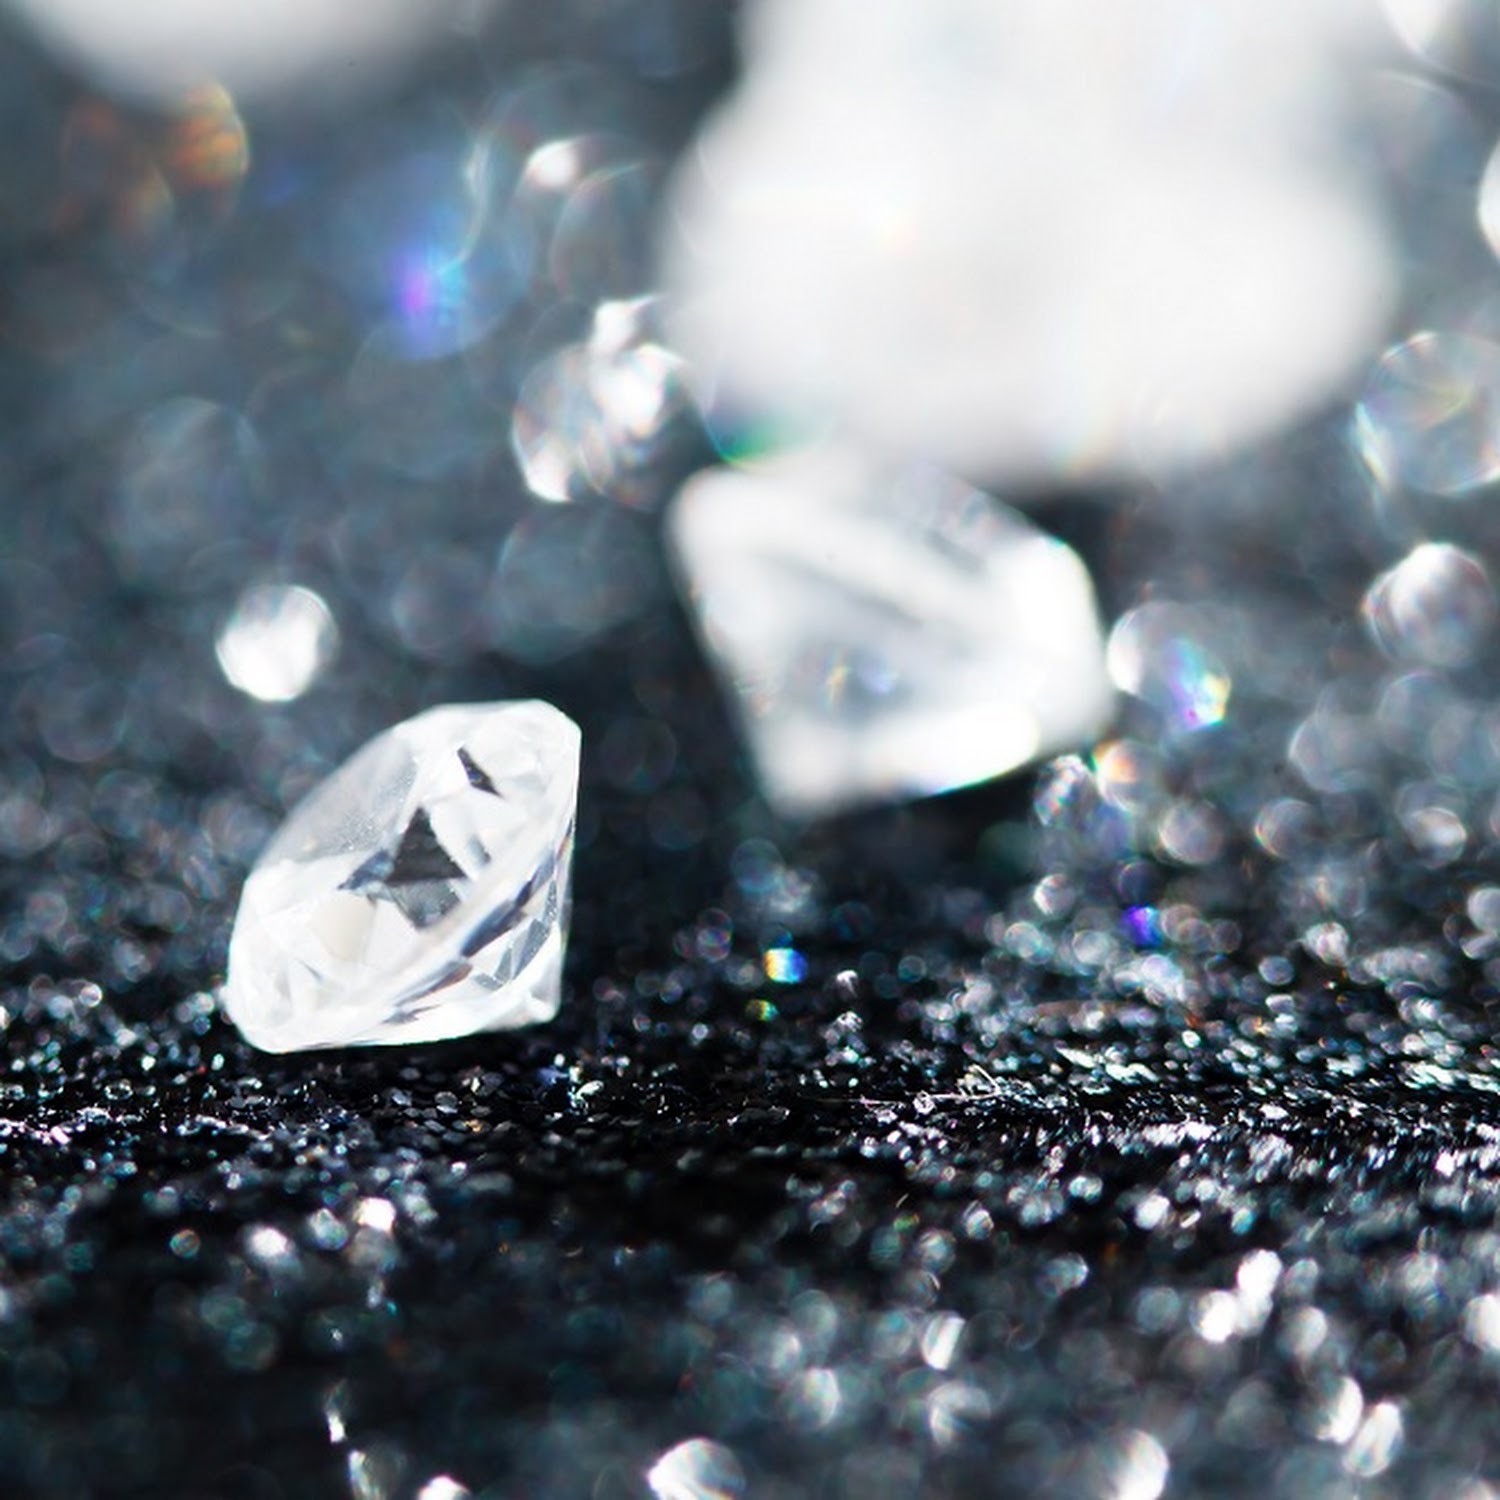 Botswana/De Beers Diamond sales deal…not yet Uhuru